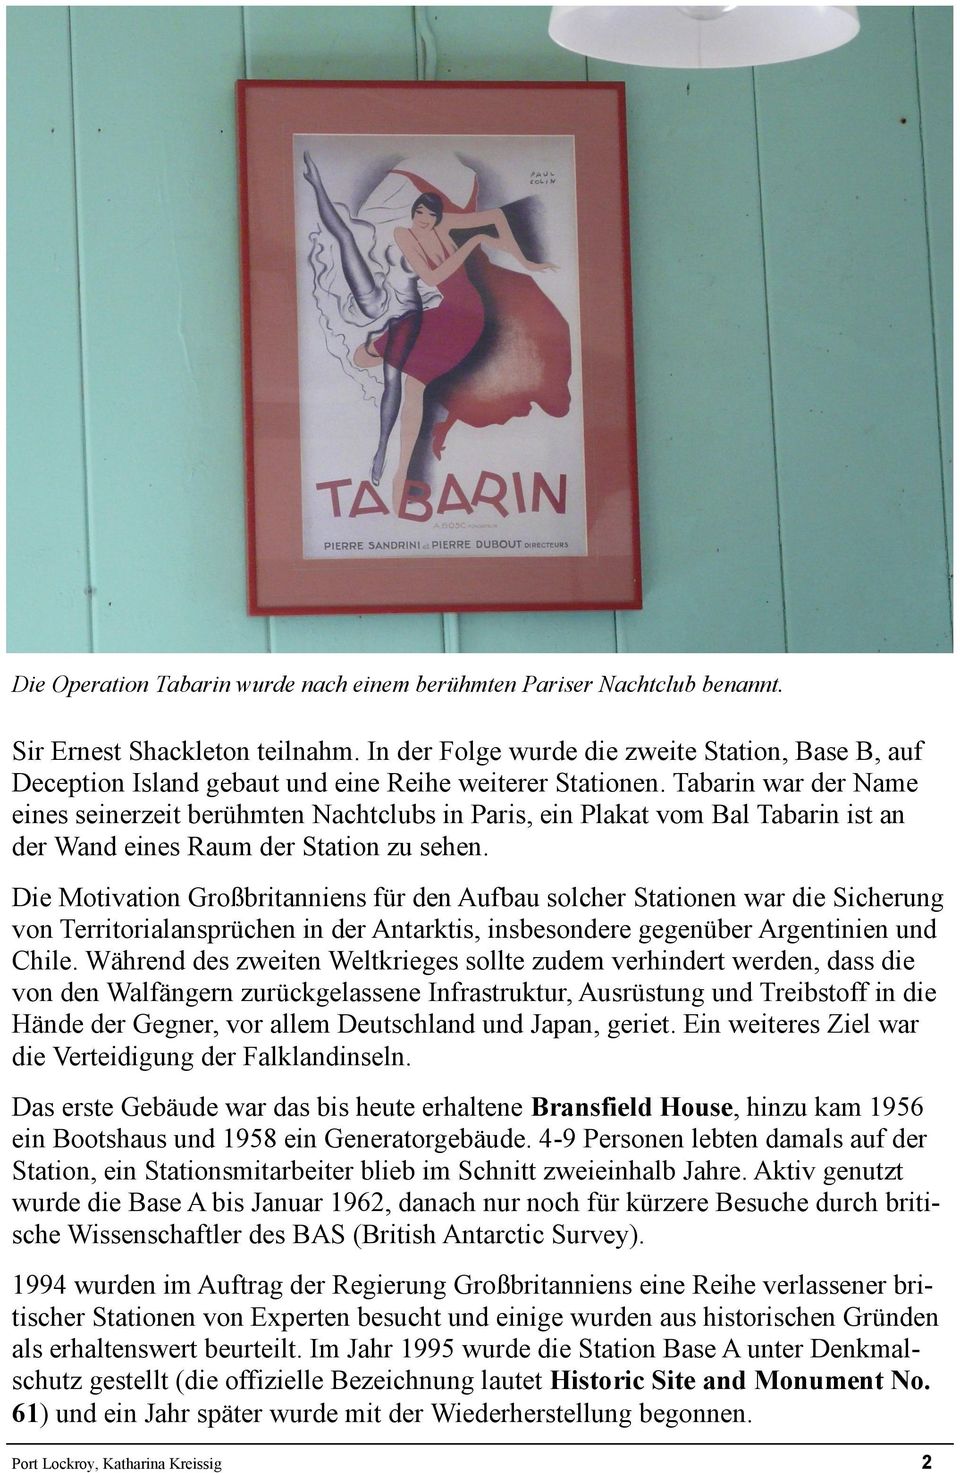 Tabarin war der Name eines seinerzeit berühmten Nachtclubs in Paris, ein Plakat vom Bal Tabarin ist an der Wand eines Raum der Station zu sehen.